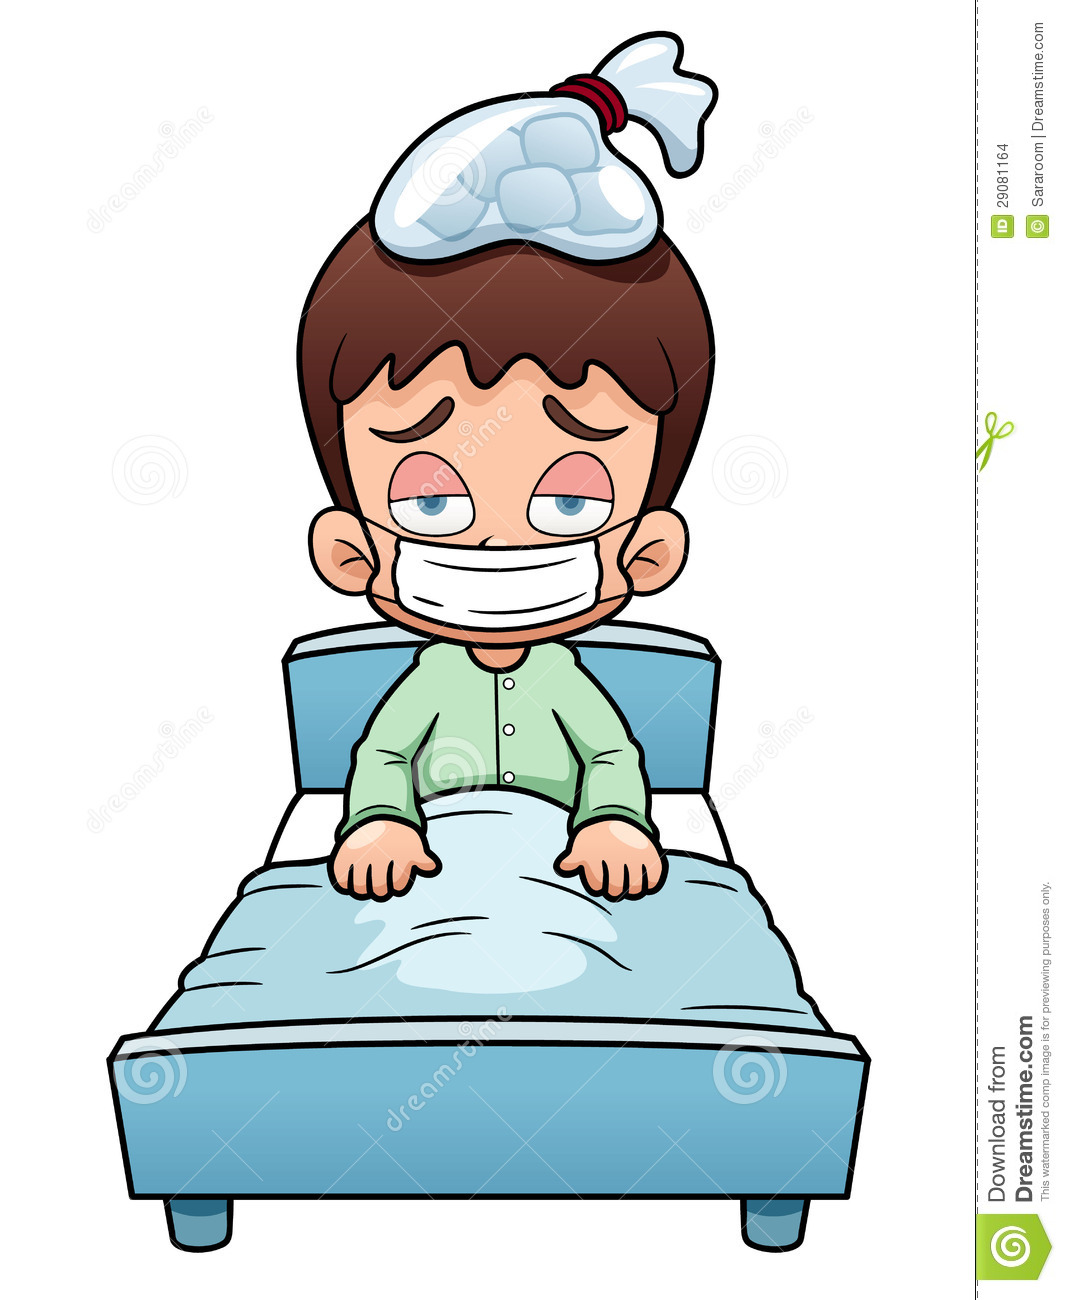 Sick Boy Cartoon Stock Images   Image  29081164